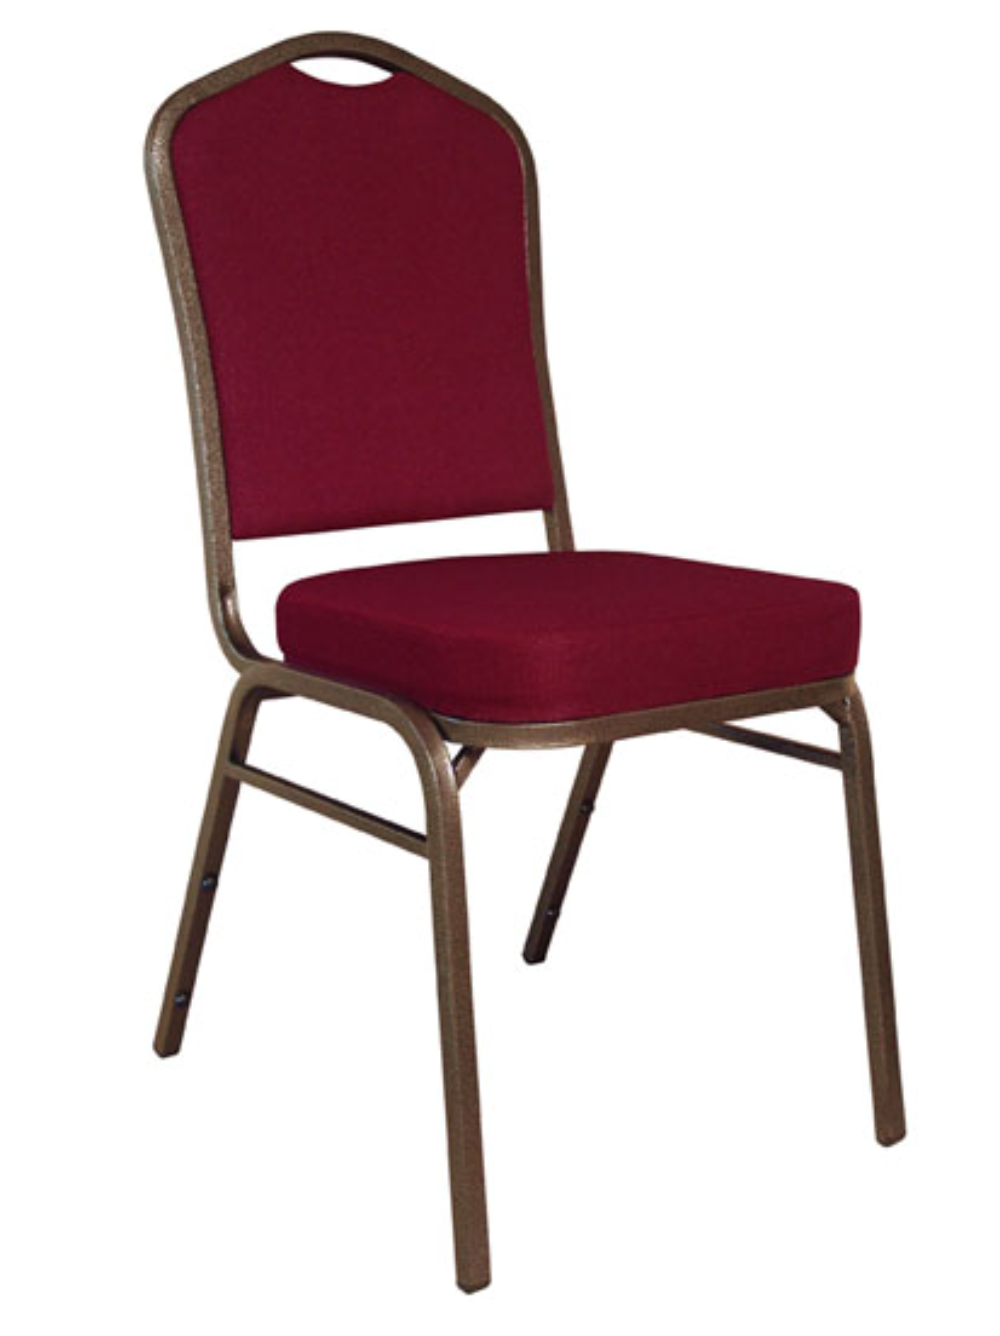 Wholesale Banquet Chairs, Chiavari Chairs